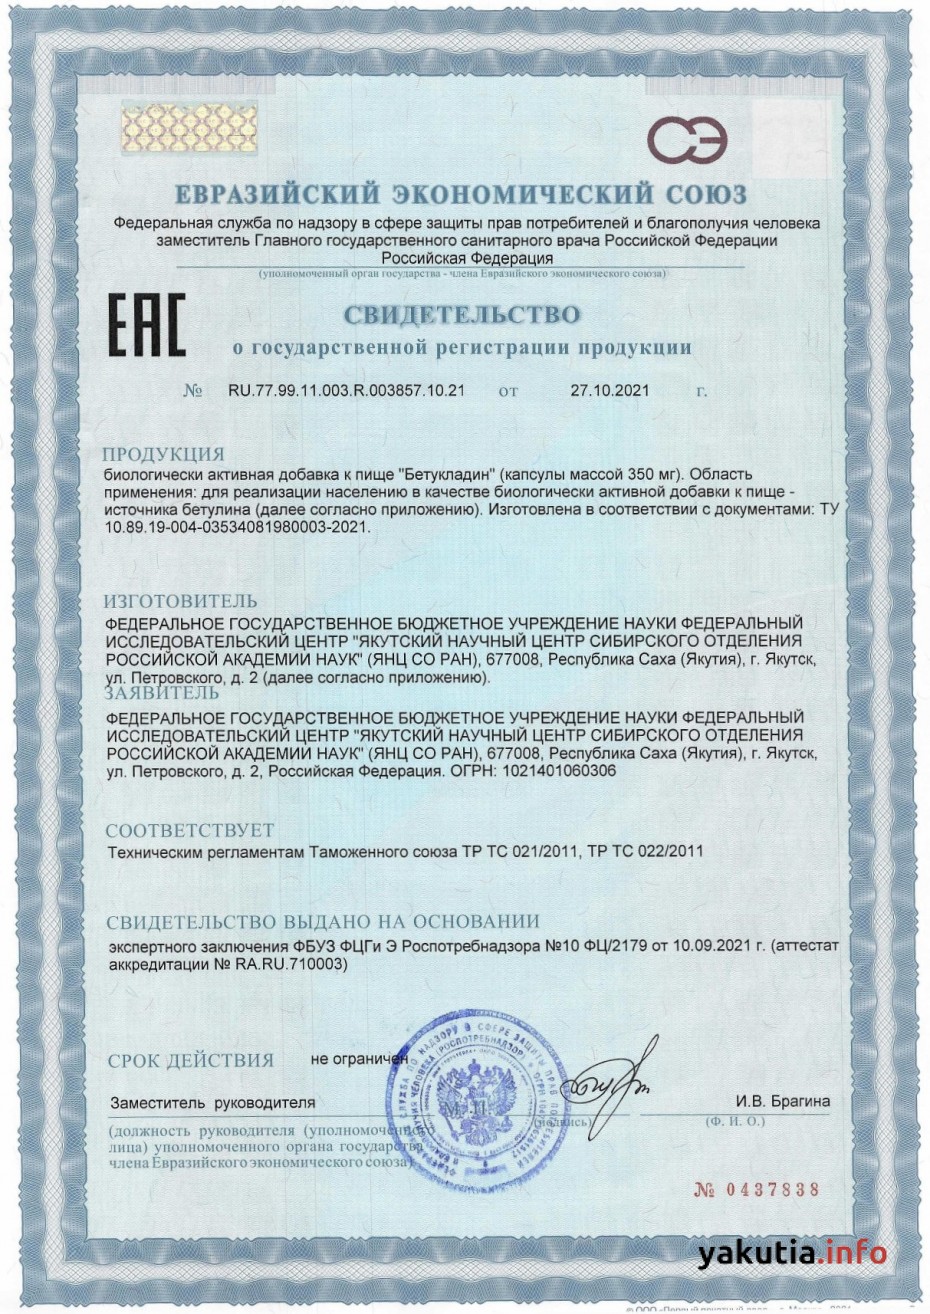 Якутский биопрепарат для лечения и профилактики COVID-19 зарегистрировал Роспотребнадзор